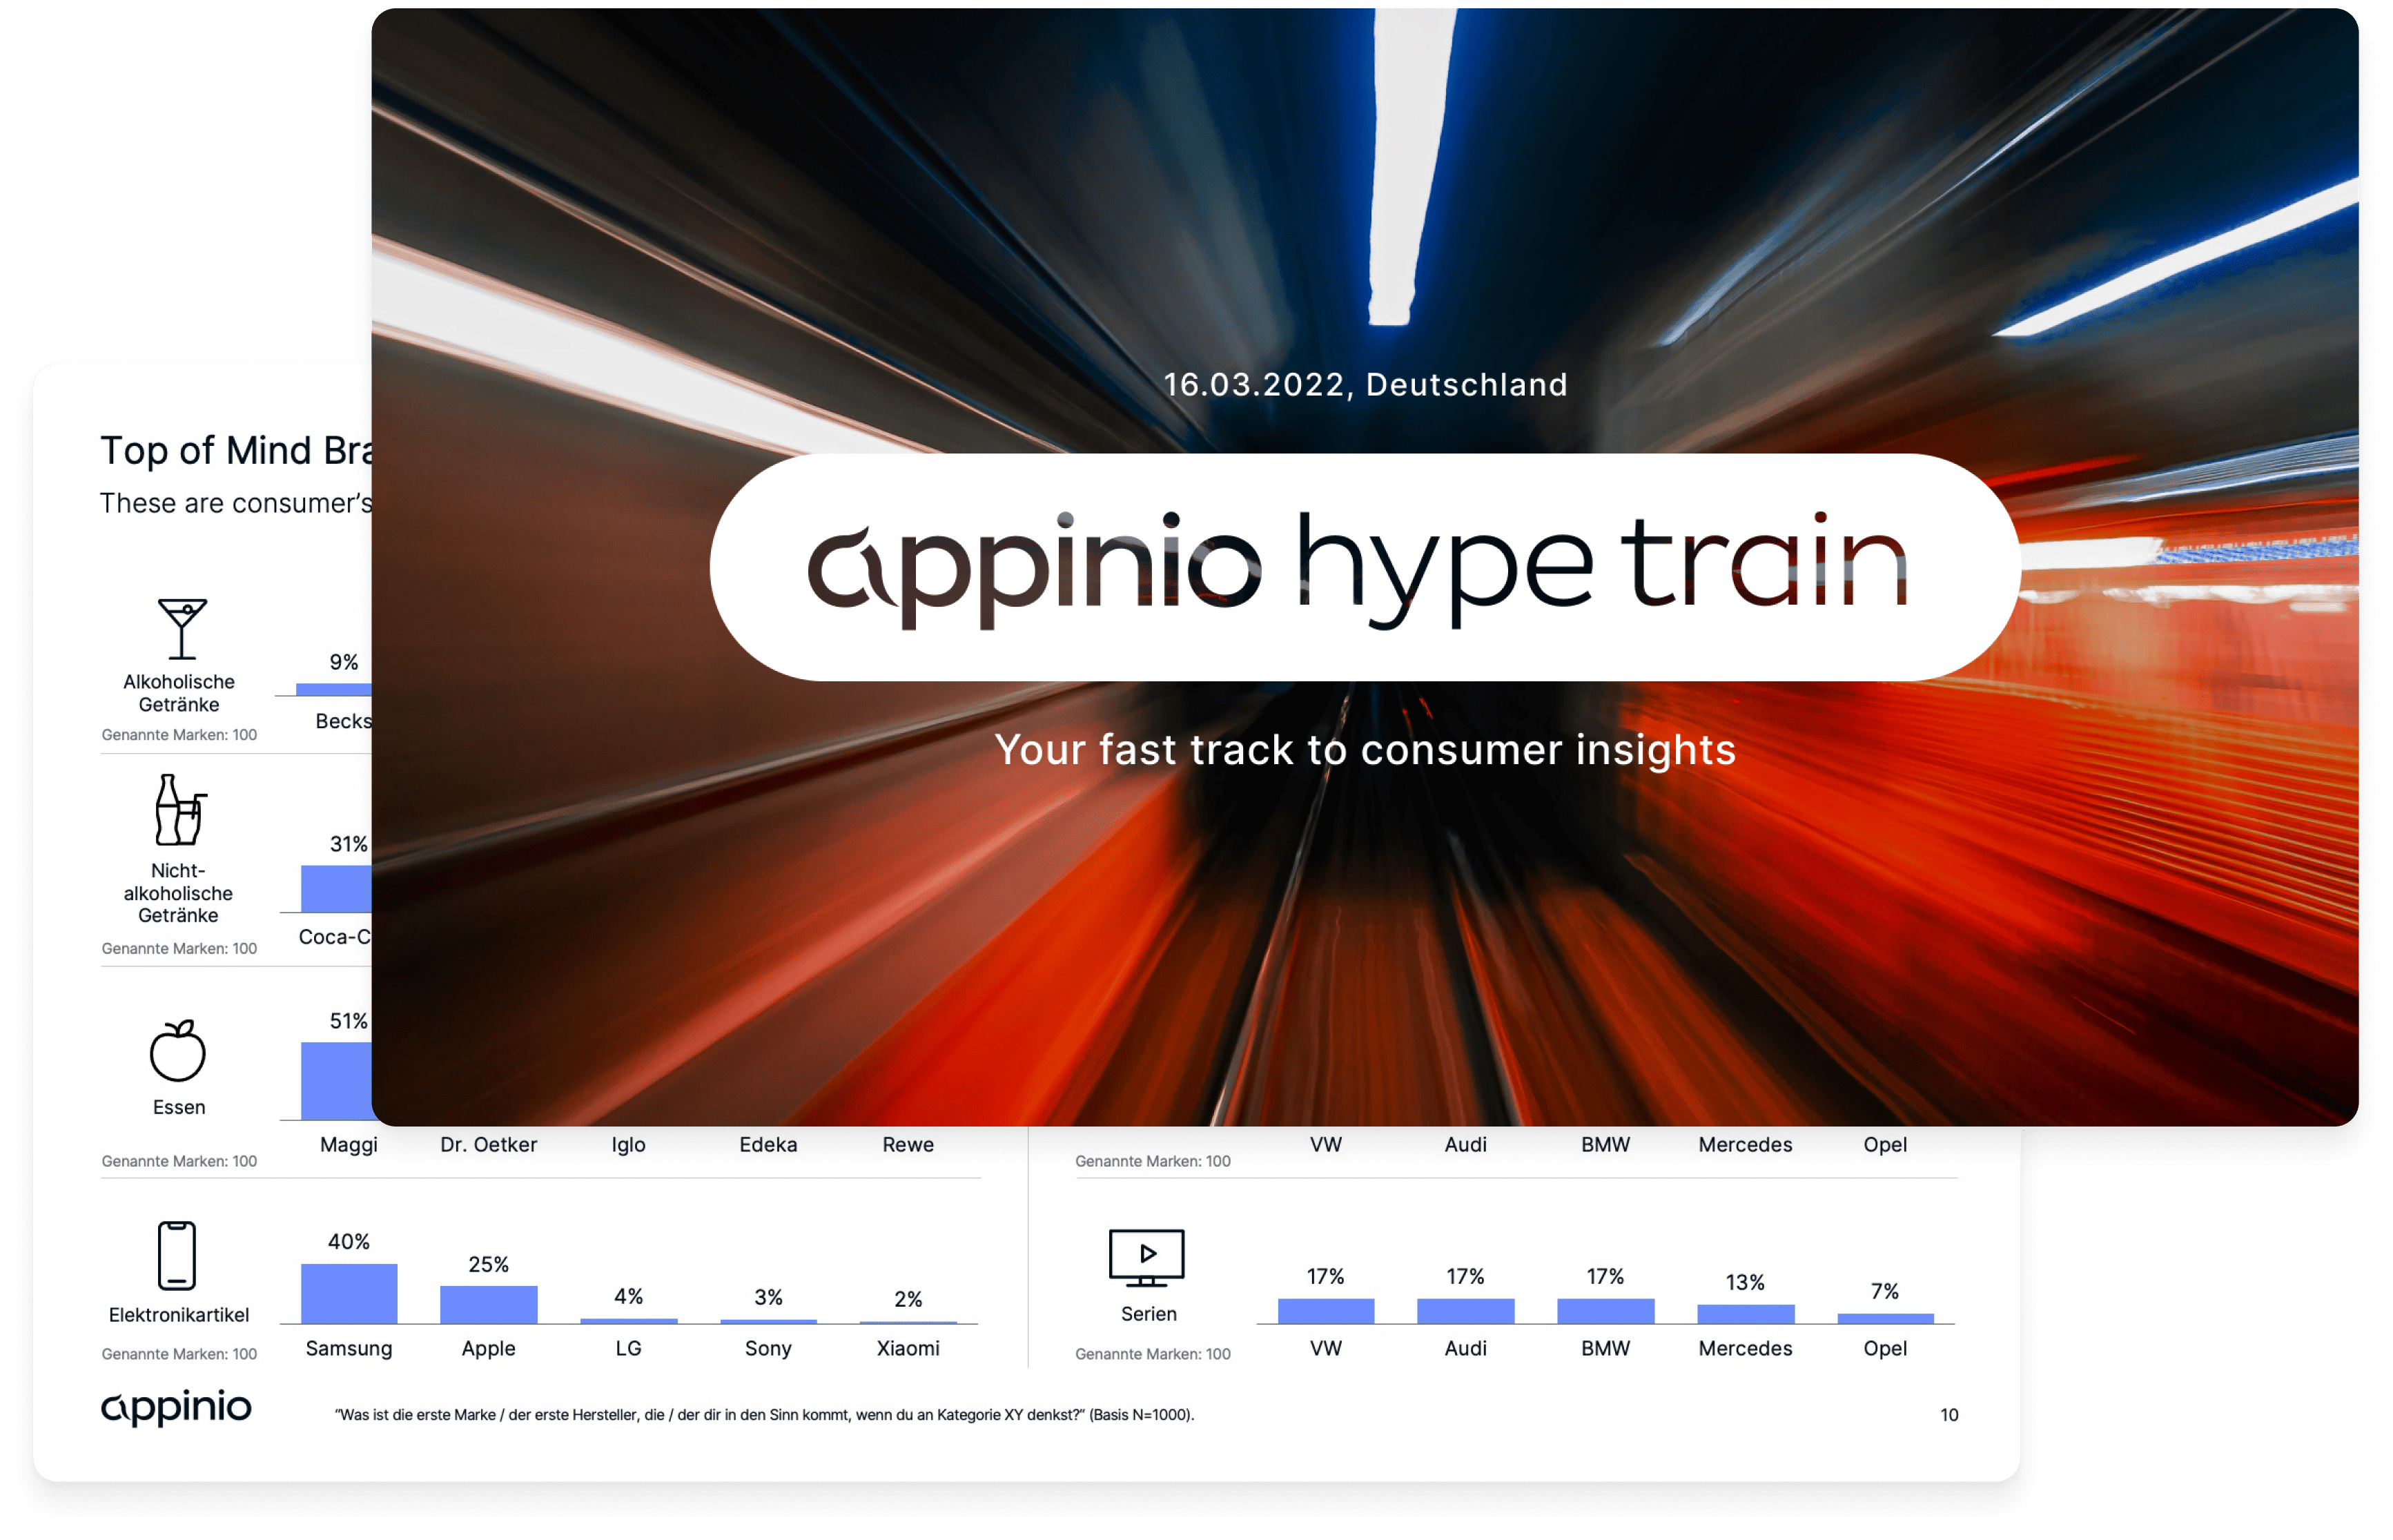 Appinio Hype Train